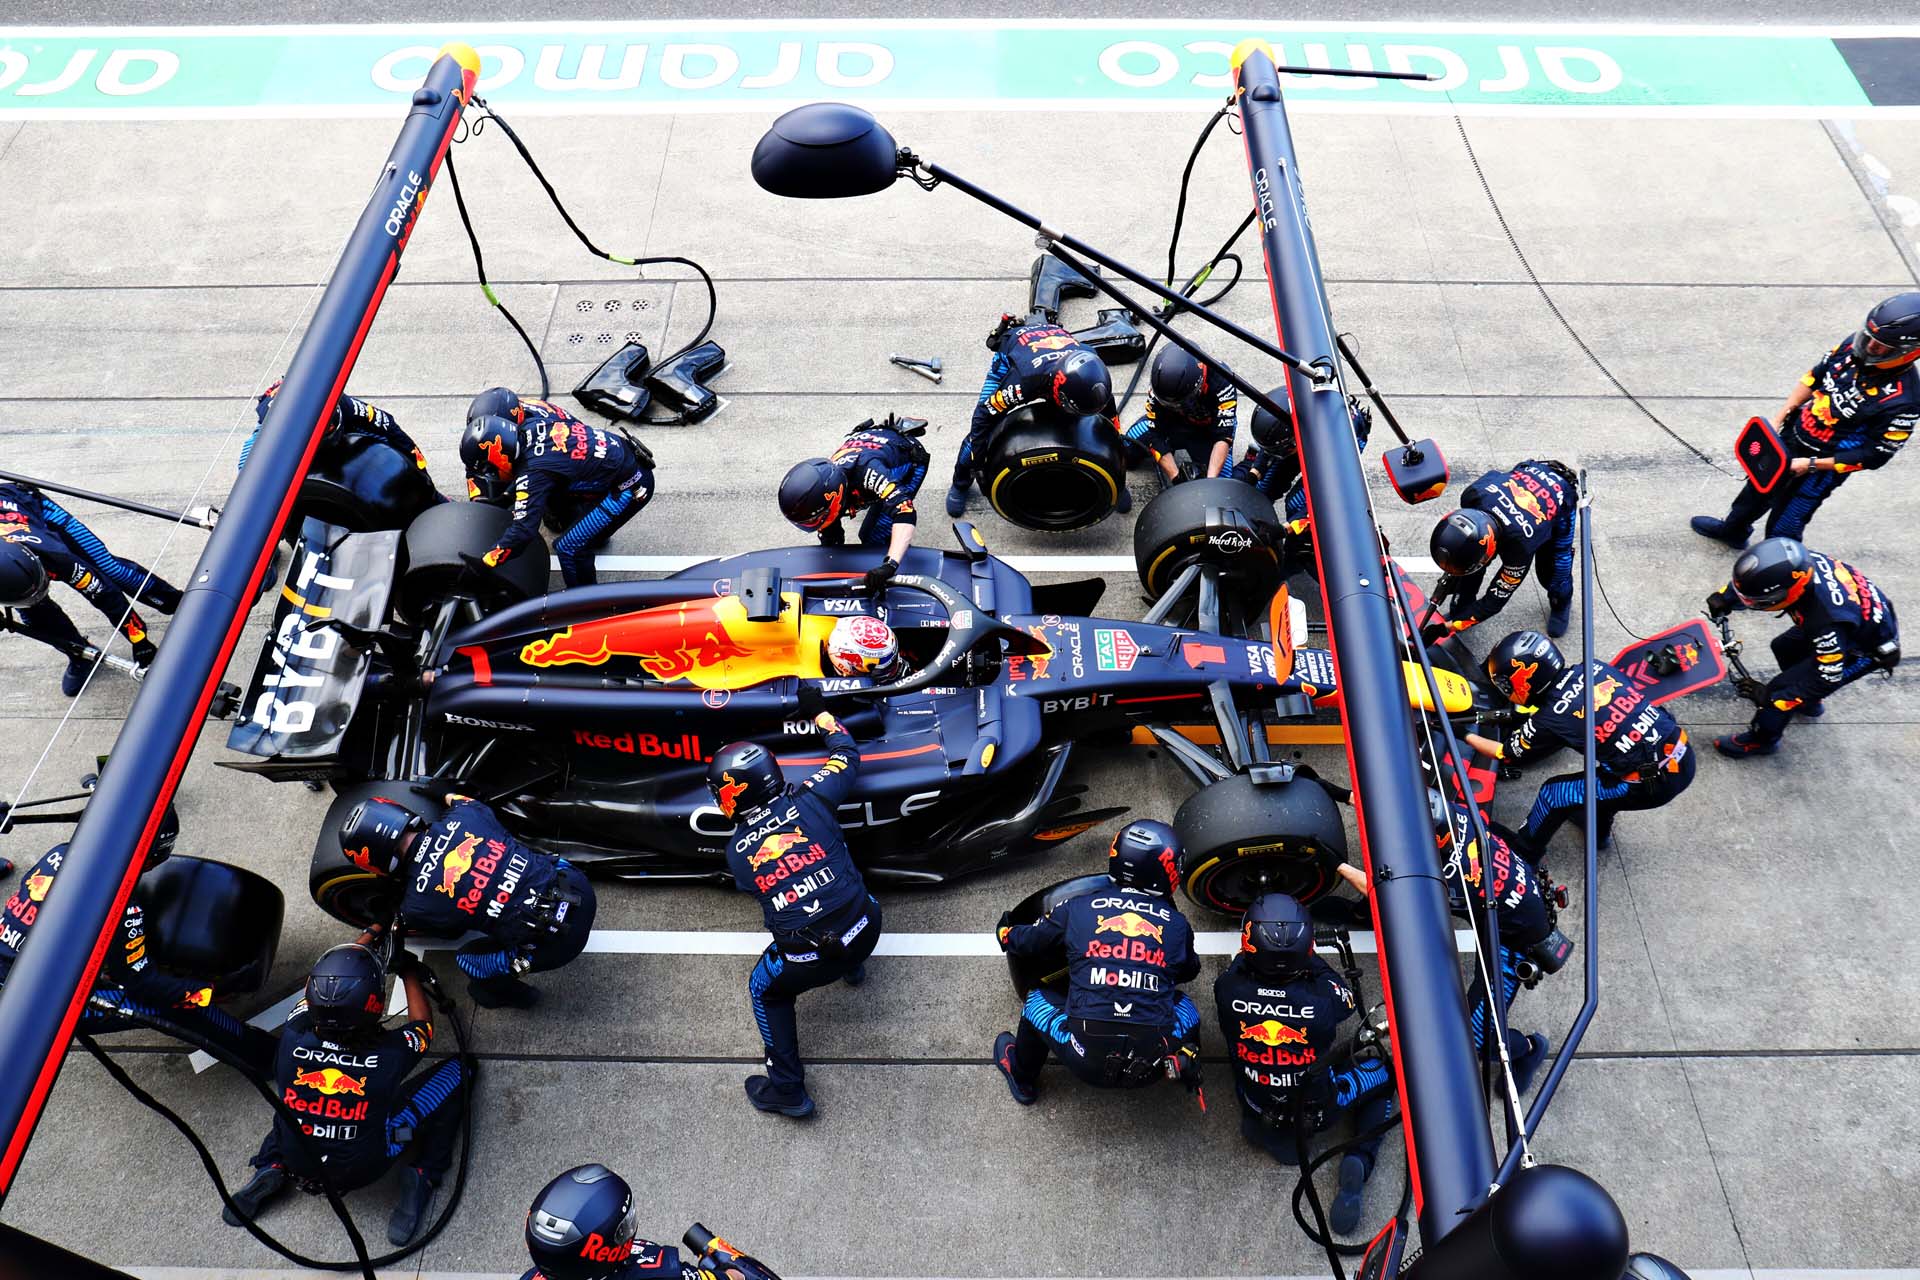 Az „A Red Bull fölénye a kínai pályán”hatásos cím lehetne erről a témáról.